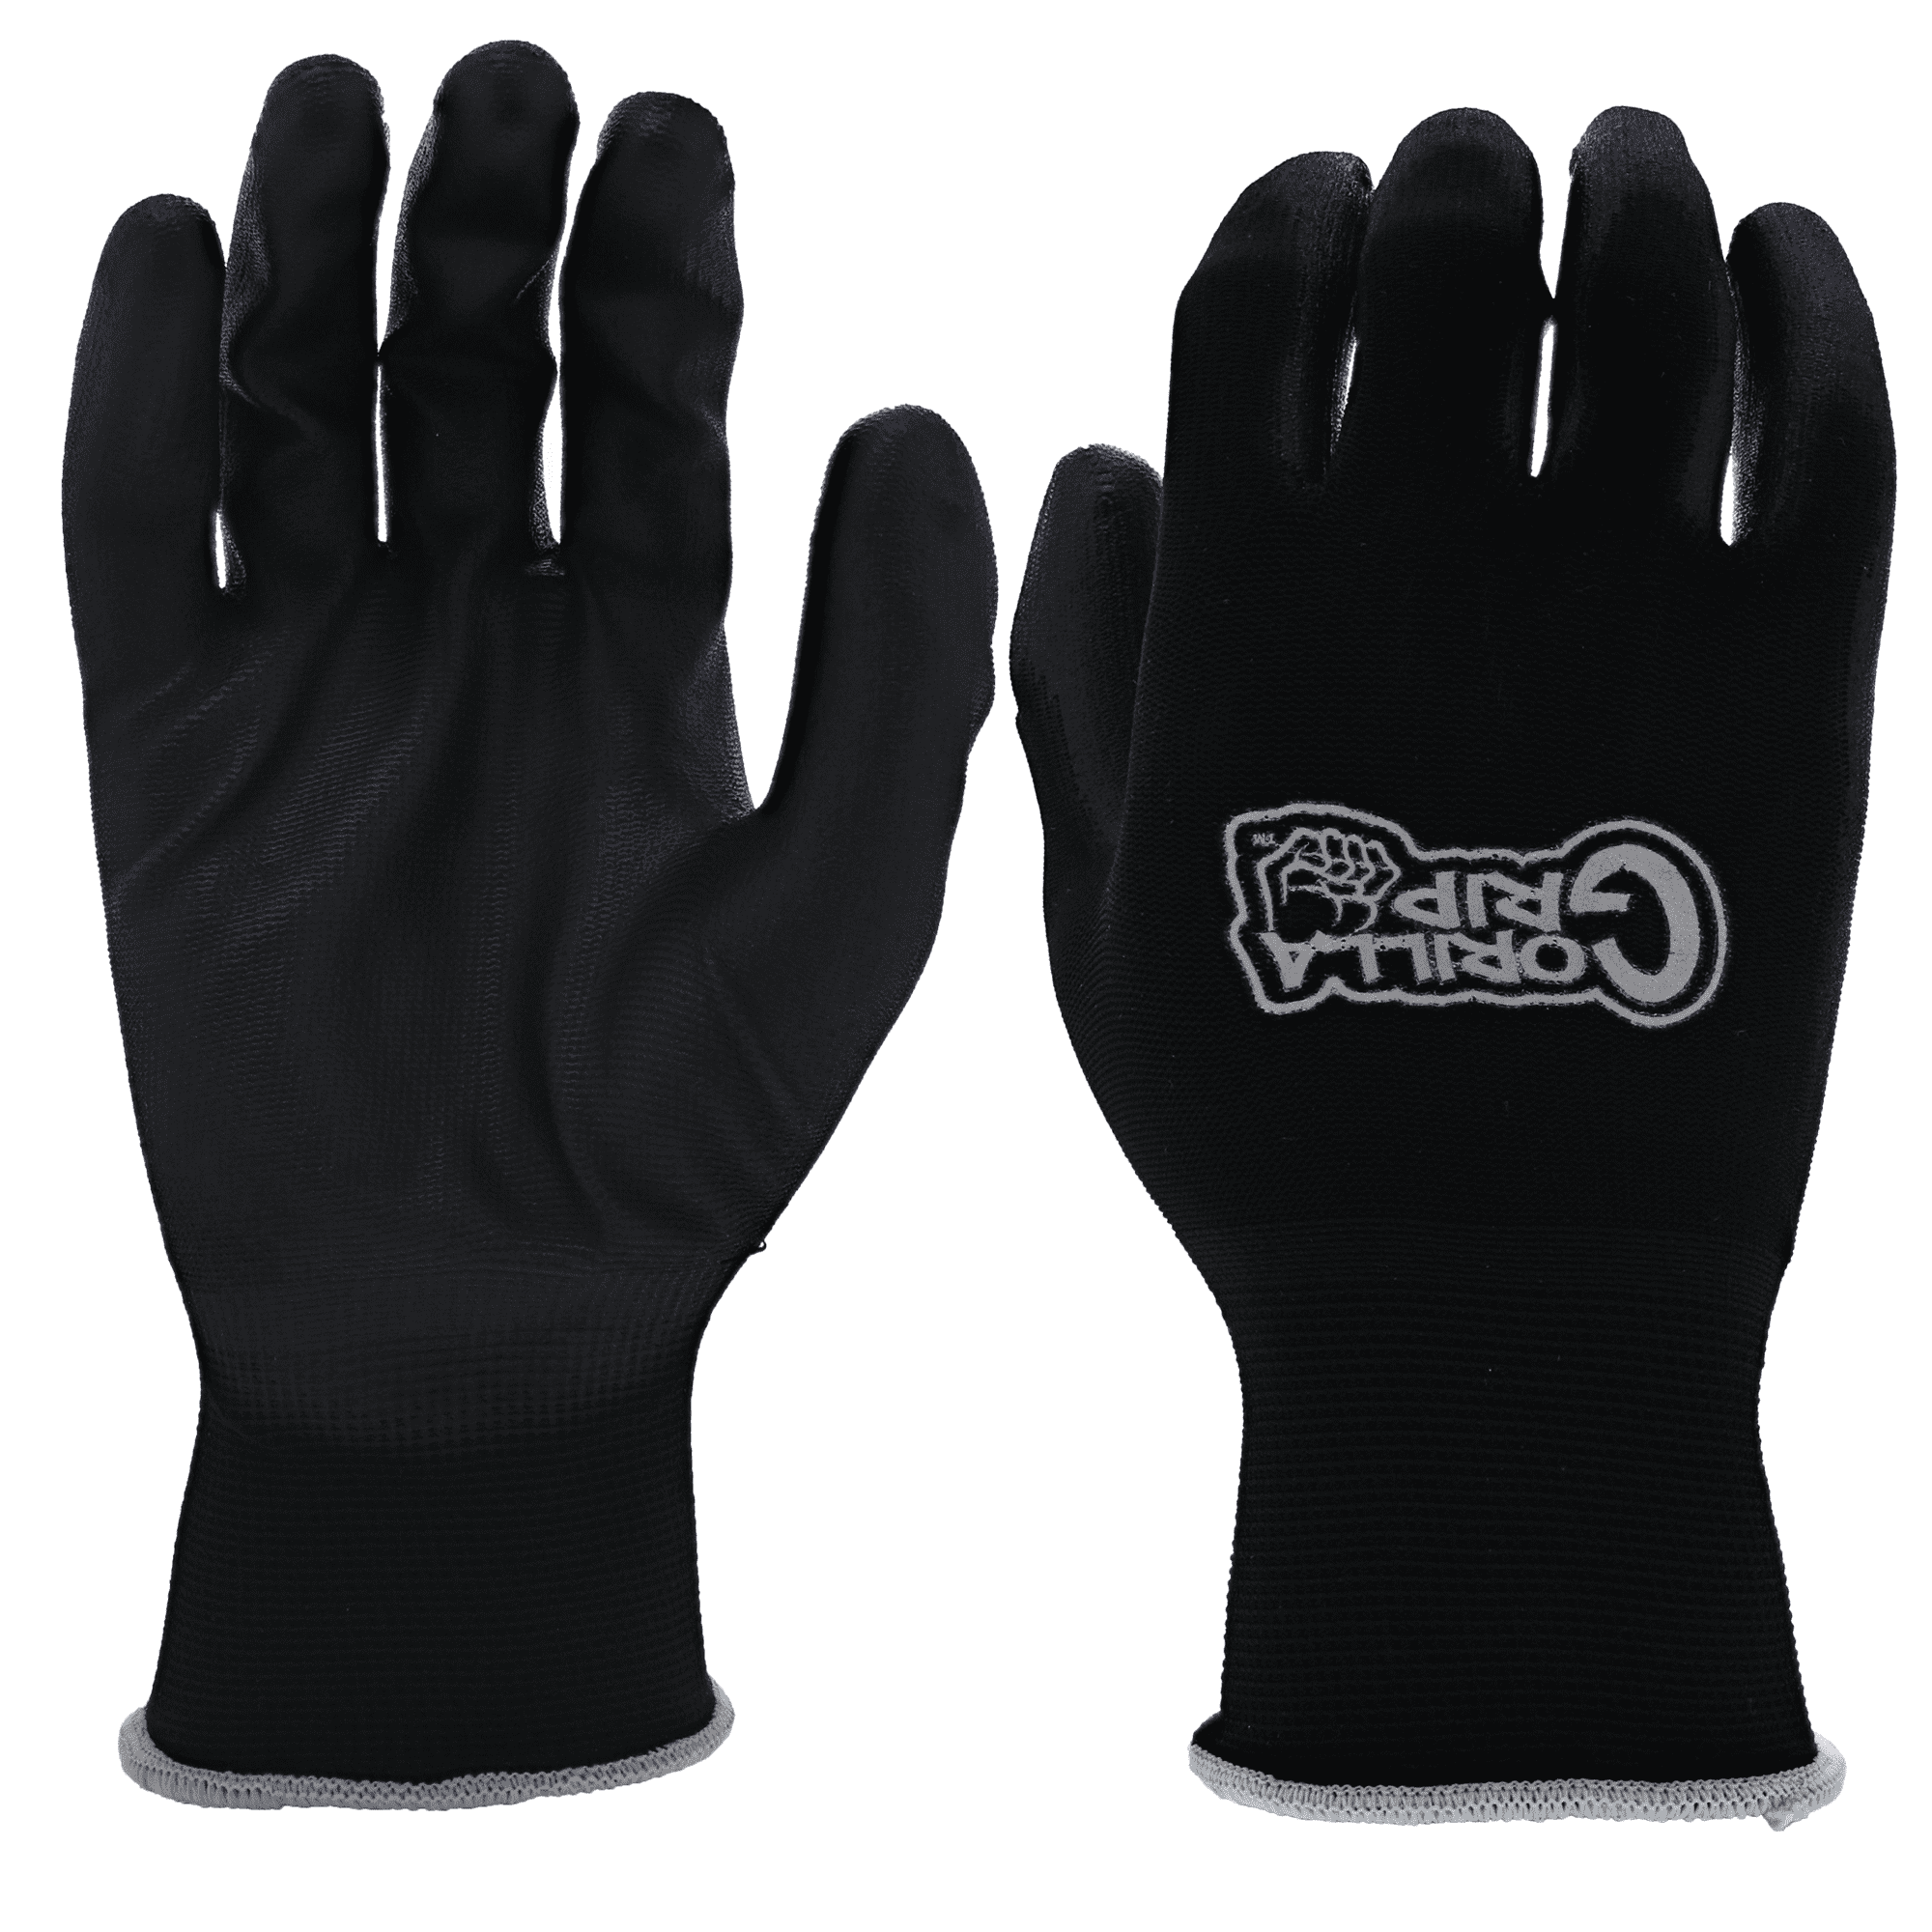 Grease Monkey Nitrile Coated Work Gloves - 15 Pairs - Size Large